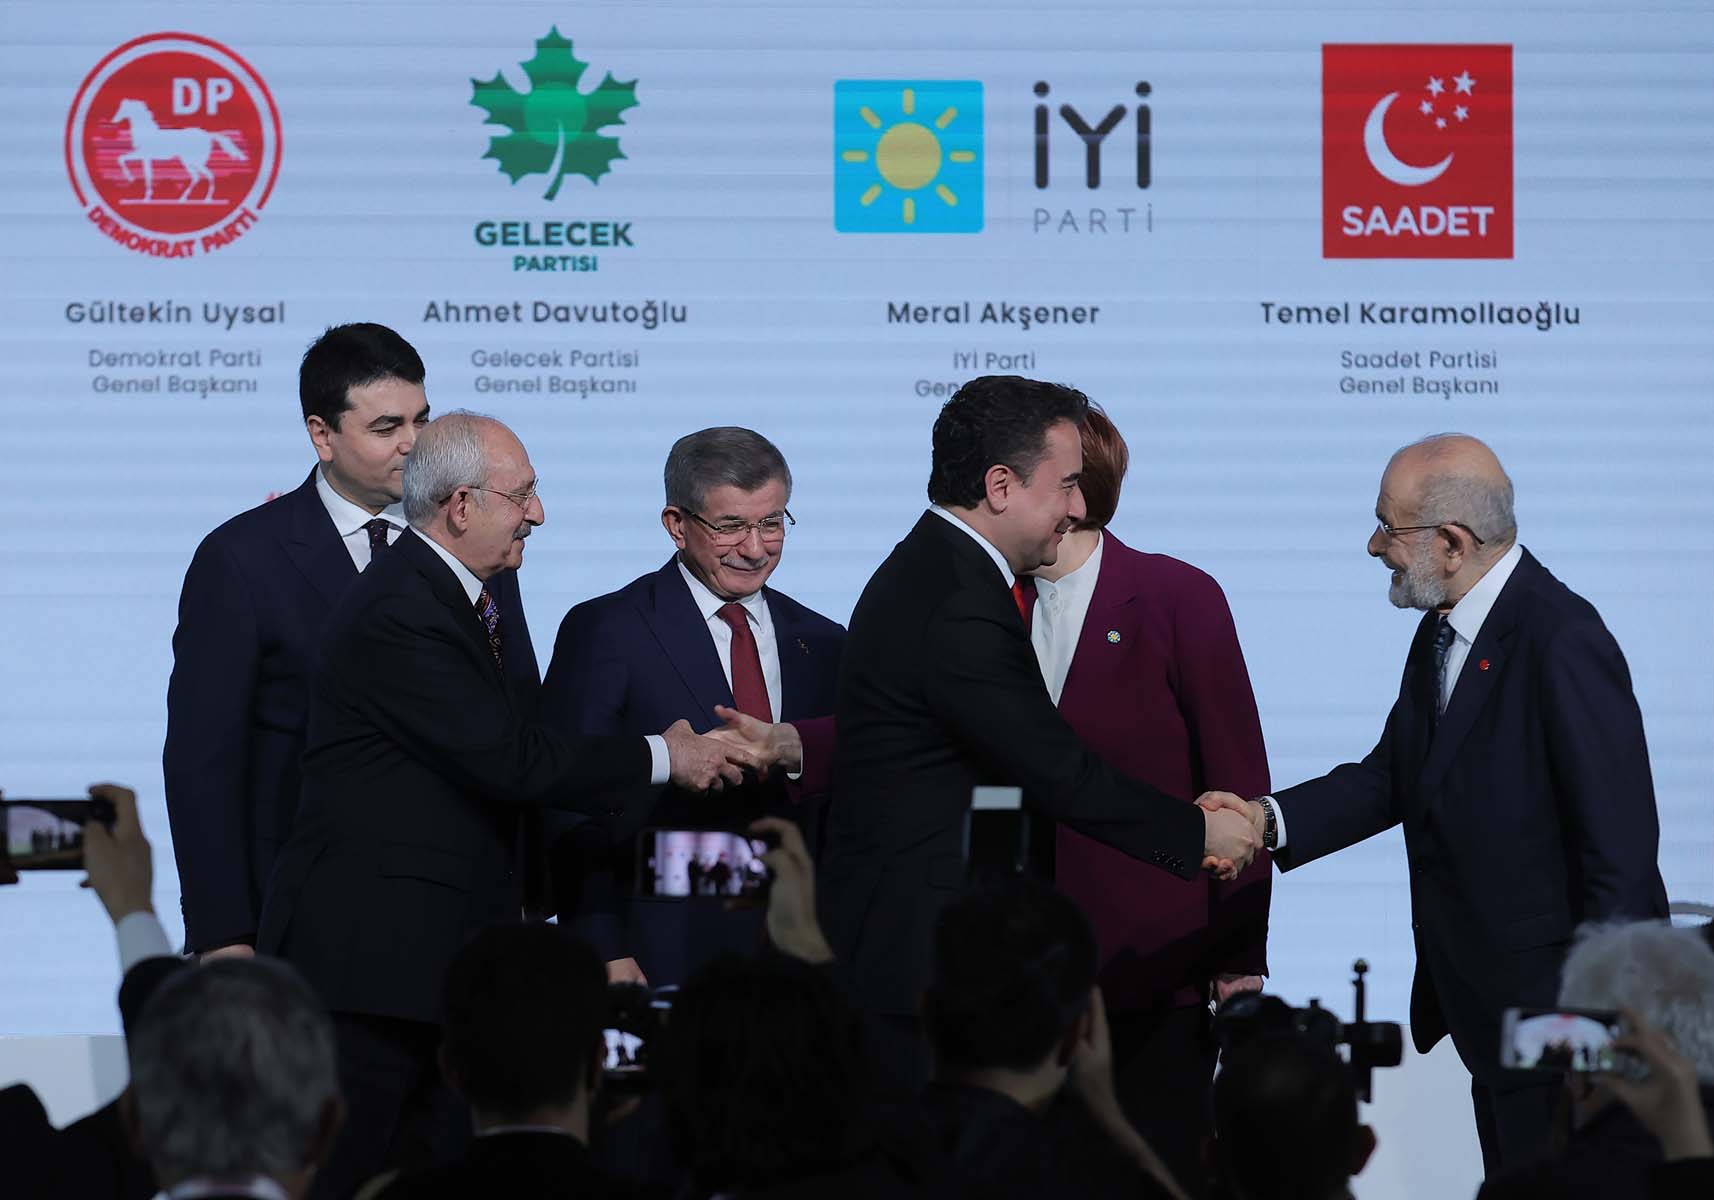 Ahmet Hakan, muhalefetin parlamenter sistem törenini böyle gördü: Davutoğlu ve Babacan boşa kostaklanmıyormuş